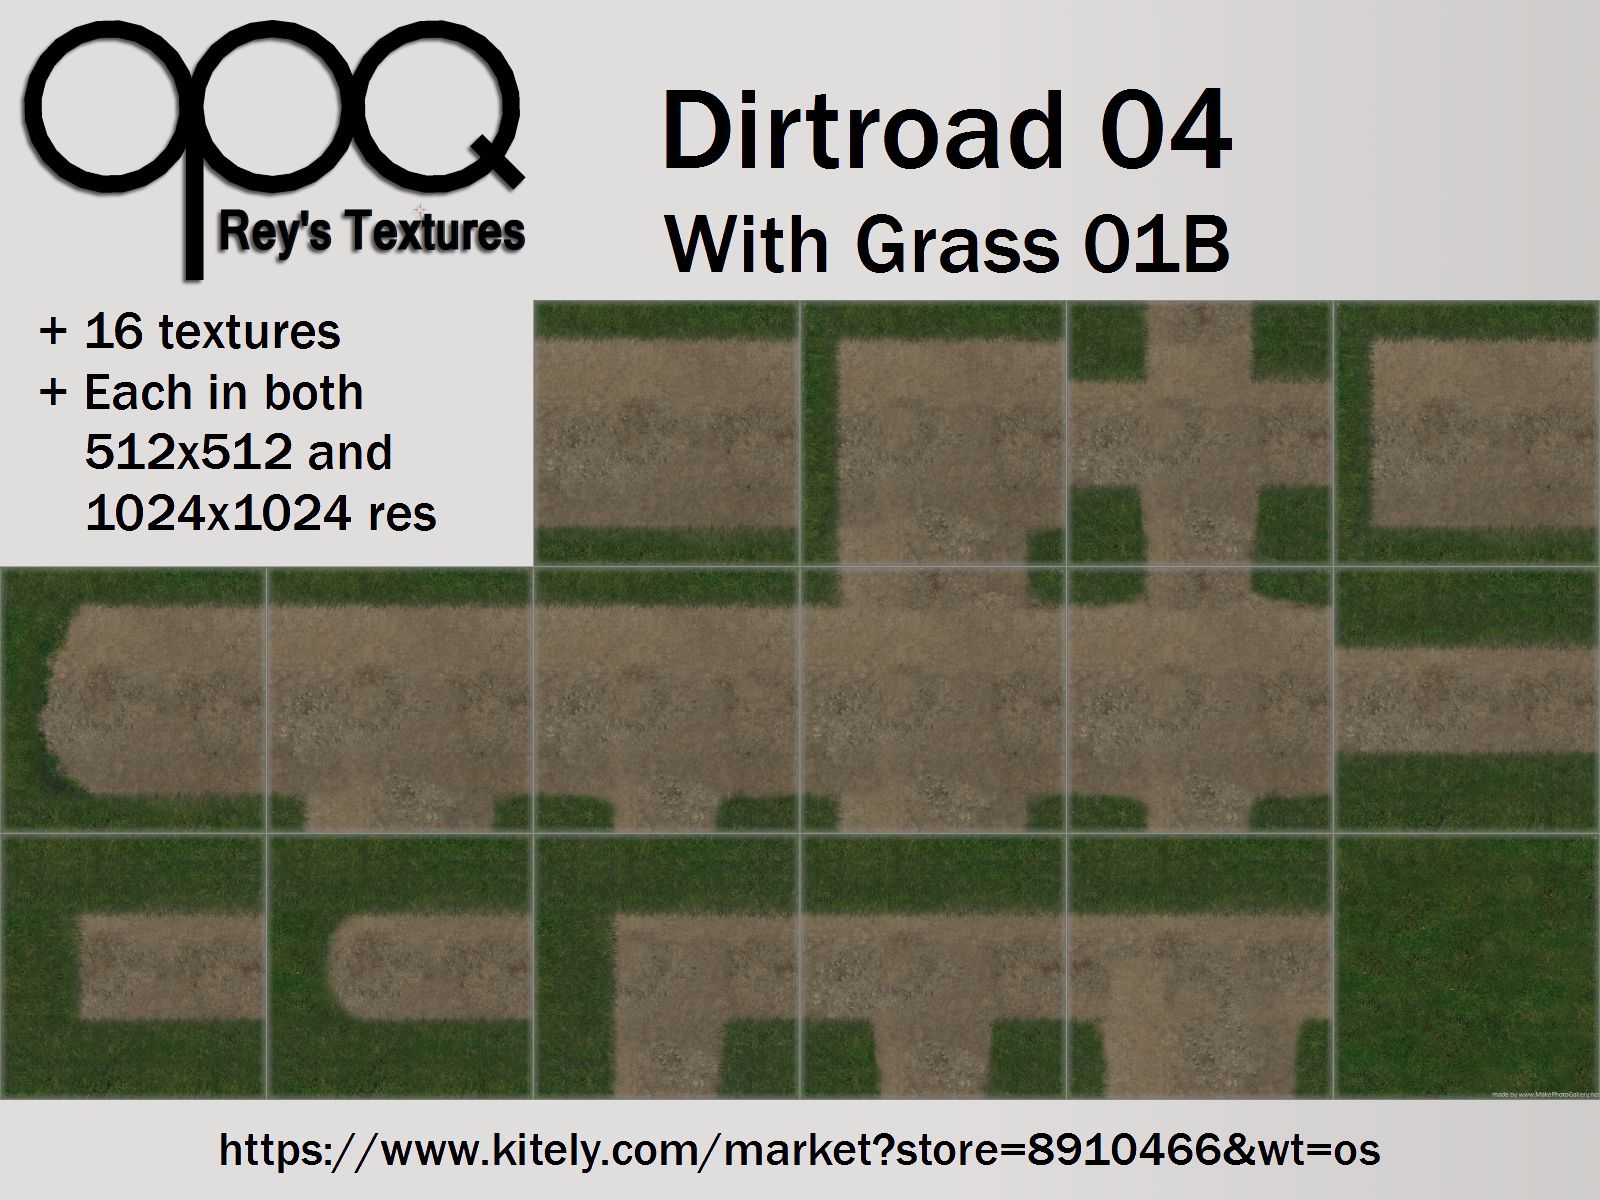 Rey's Dirtroad 04 Grass 01B Poster Kitely.jpg